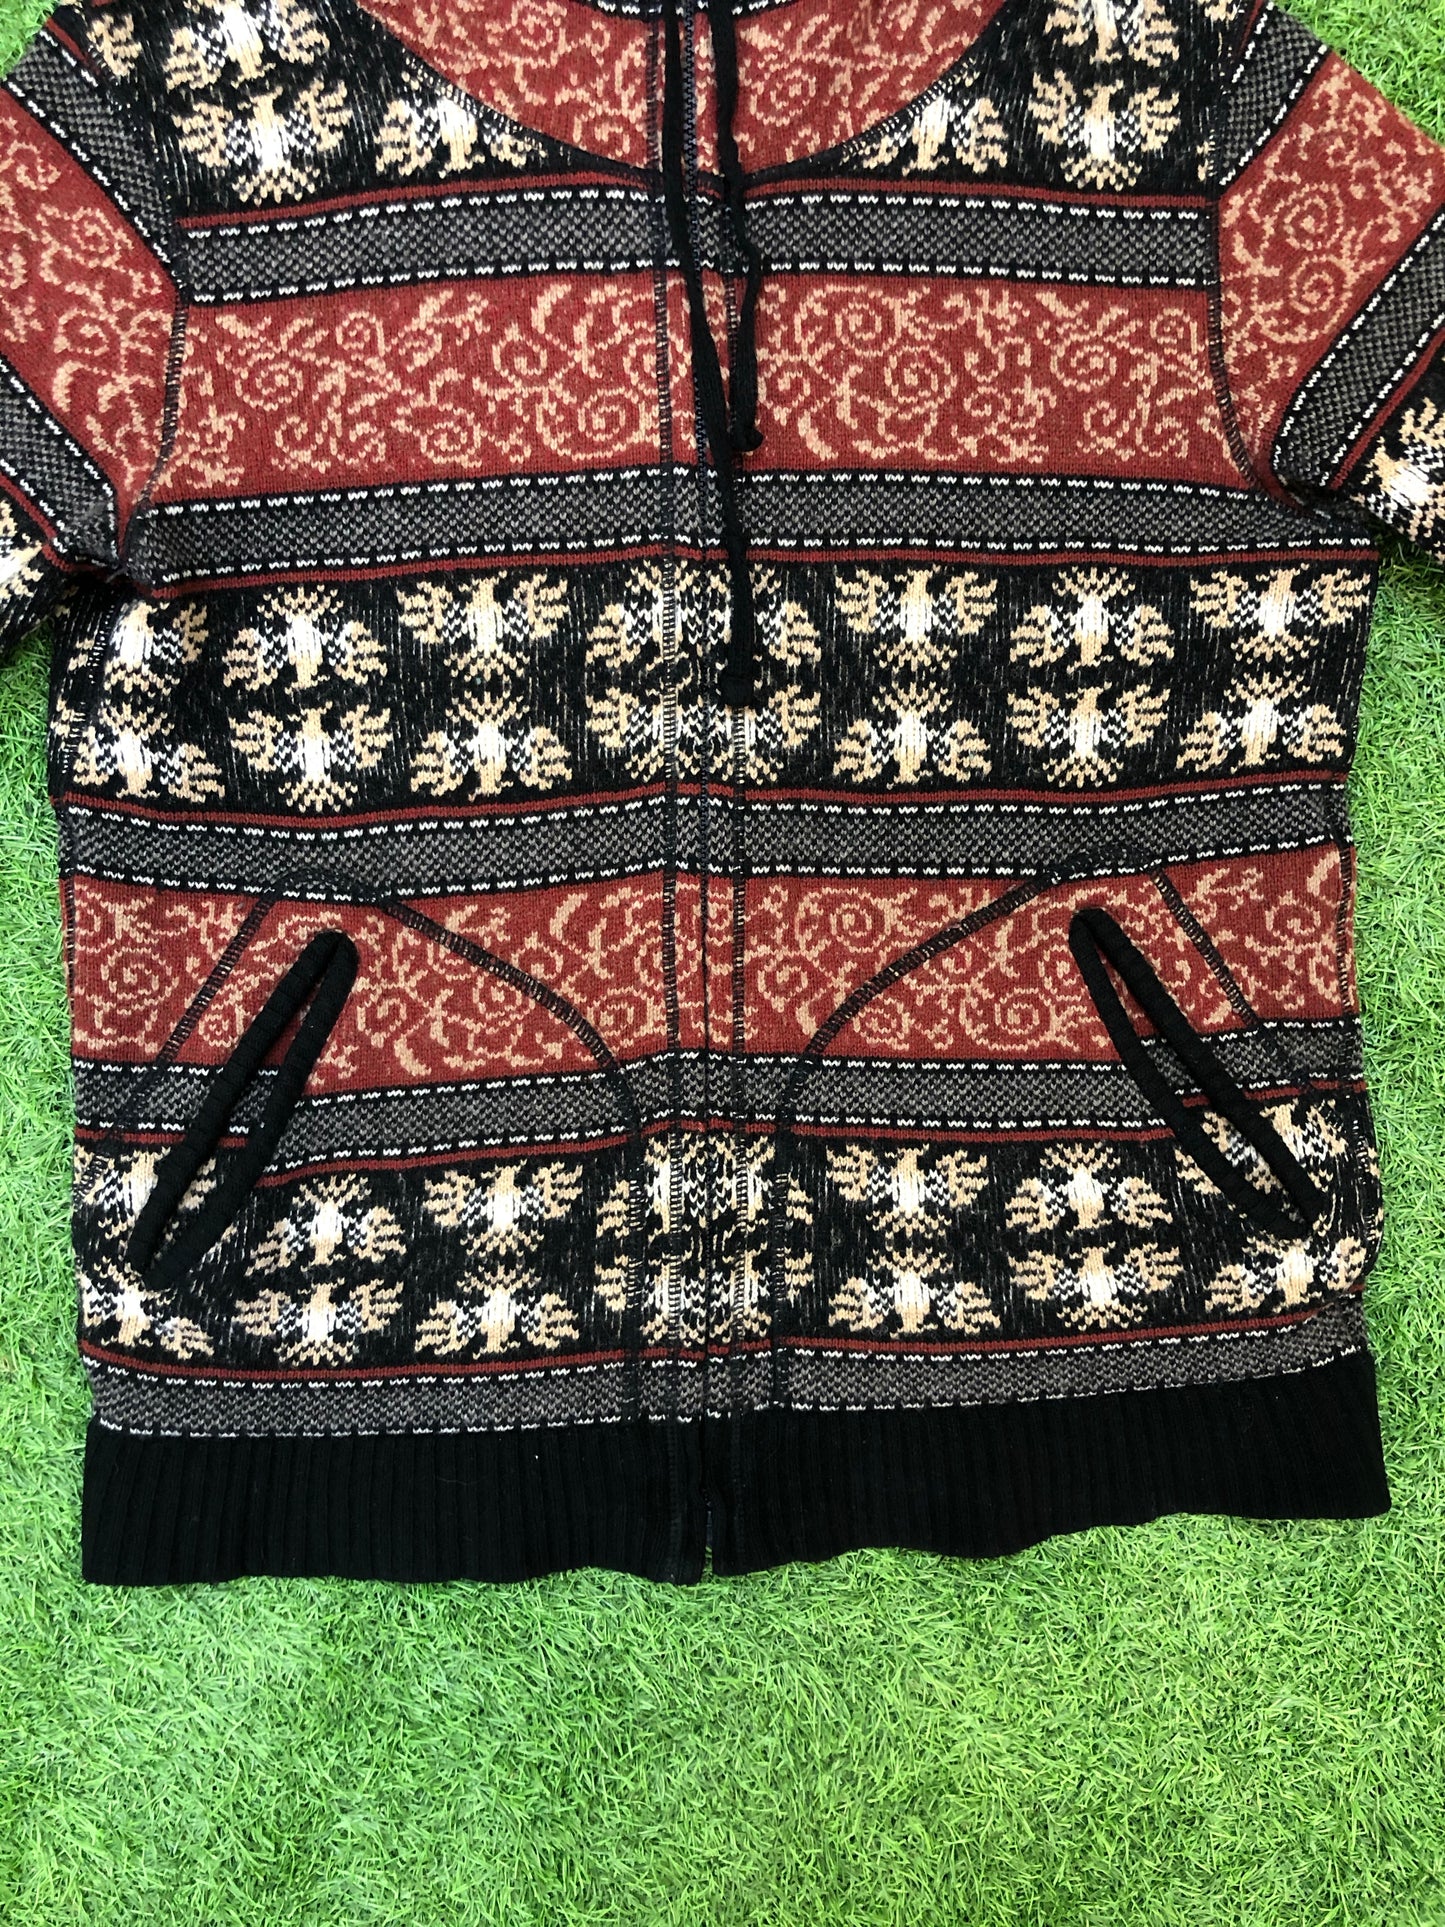 Phenomenon Knitted Zip Jacket